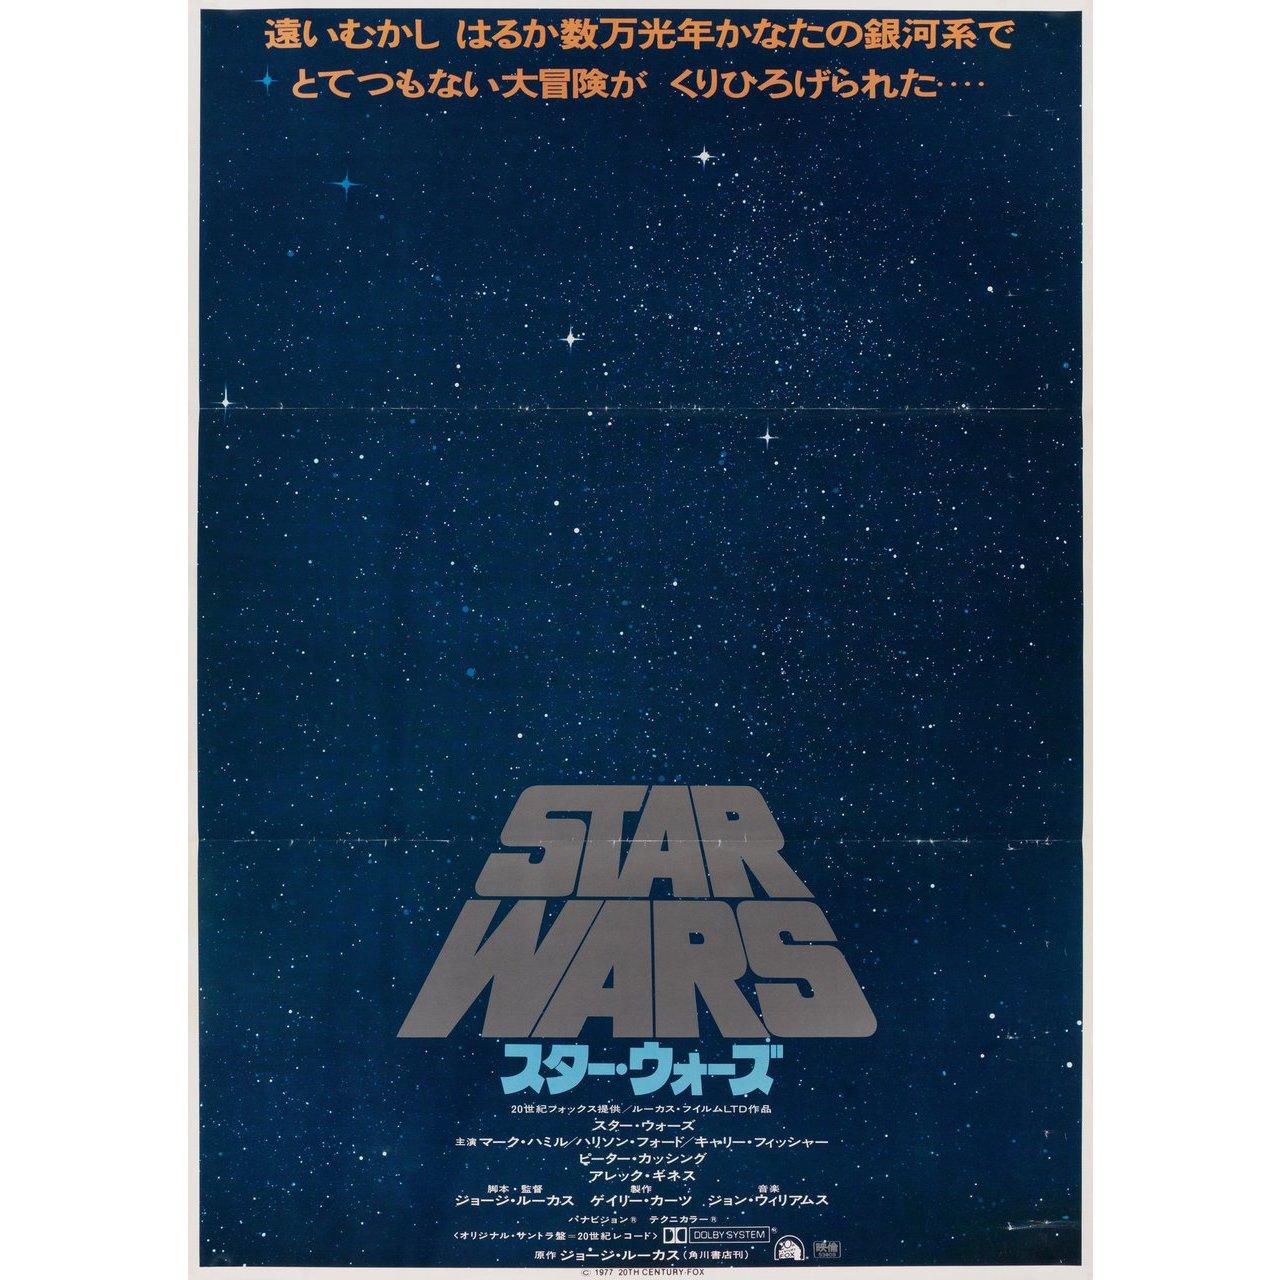 Affiche originale japonaise B2 de 1977 pour le film La Guerre des étoiles (Un nouvel espoir) réalisé par George Lucas avec Mark Hamill / Harrison Ford / Carrie Fisher / Alec Guinness / Peter Cushing. Très bon état, plié. De nombreuses affiches